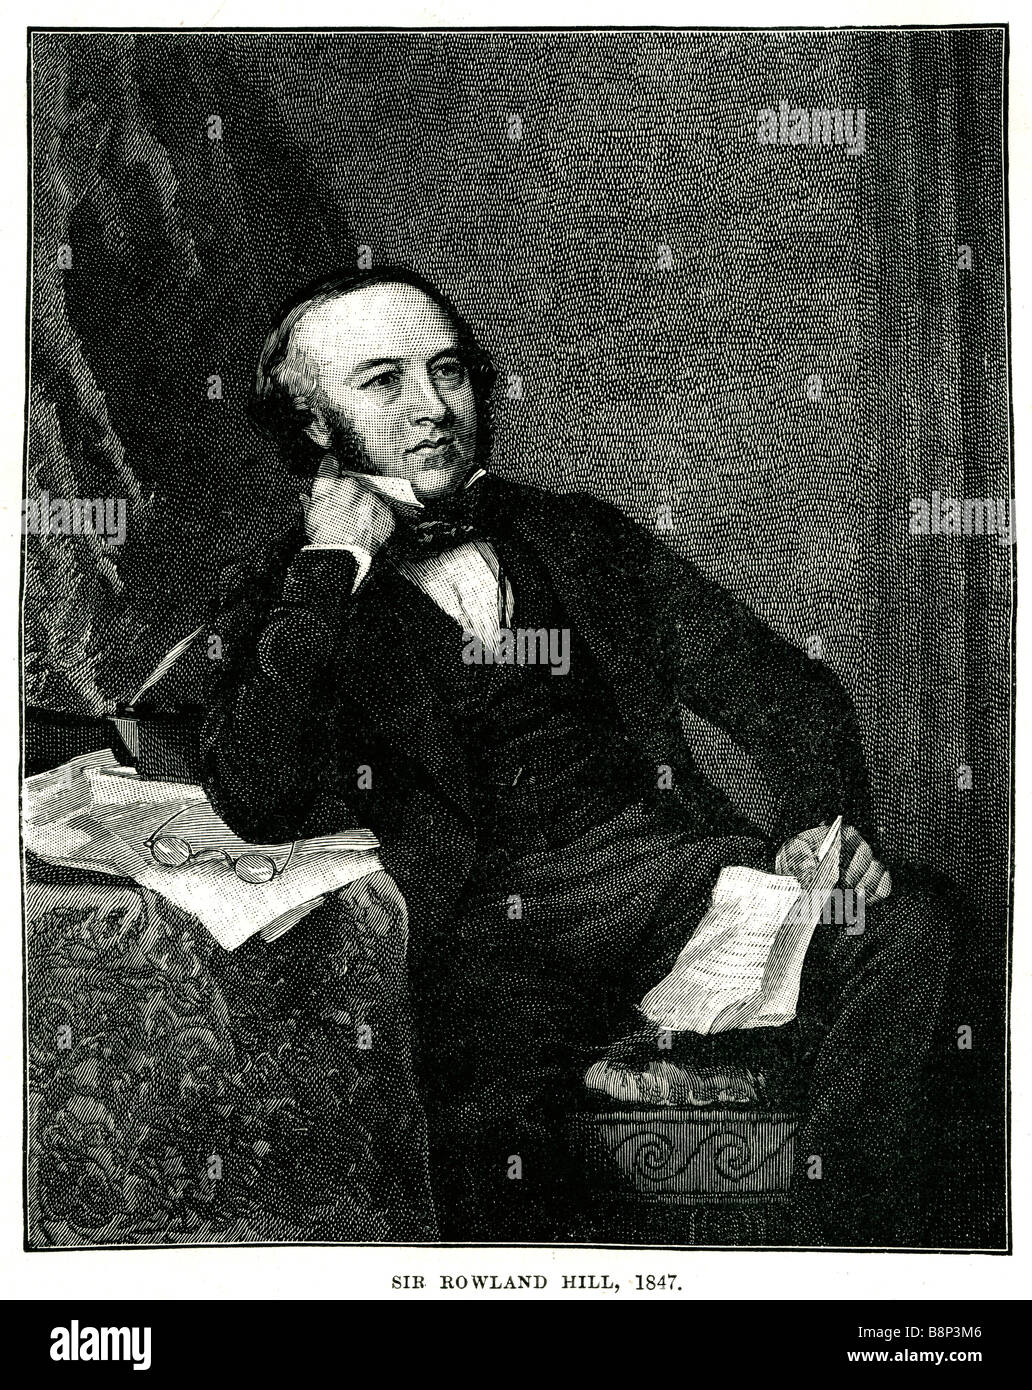 Sir rowland hill 1847 insegnante di inglese penny spese di affrancatura postale riformatore sociale Foto Stock